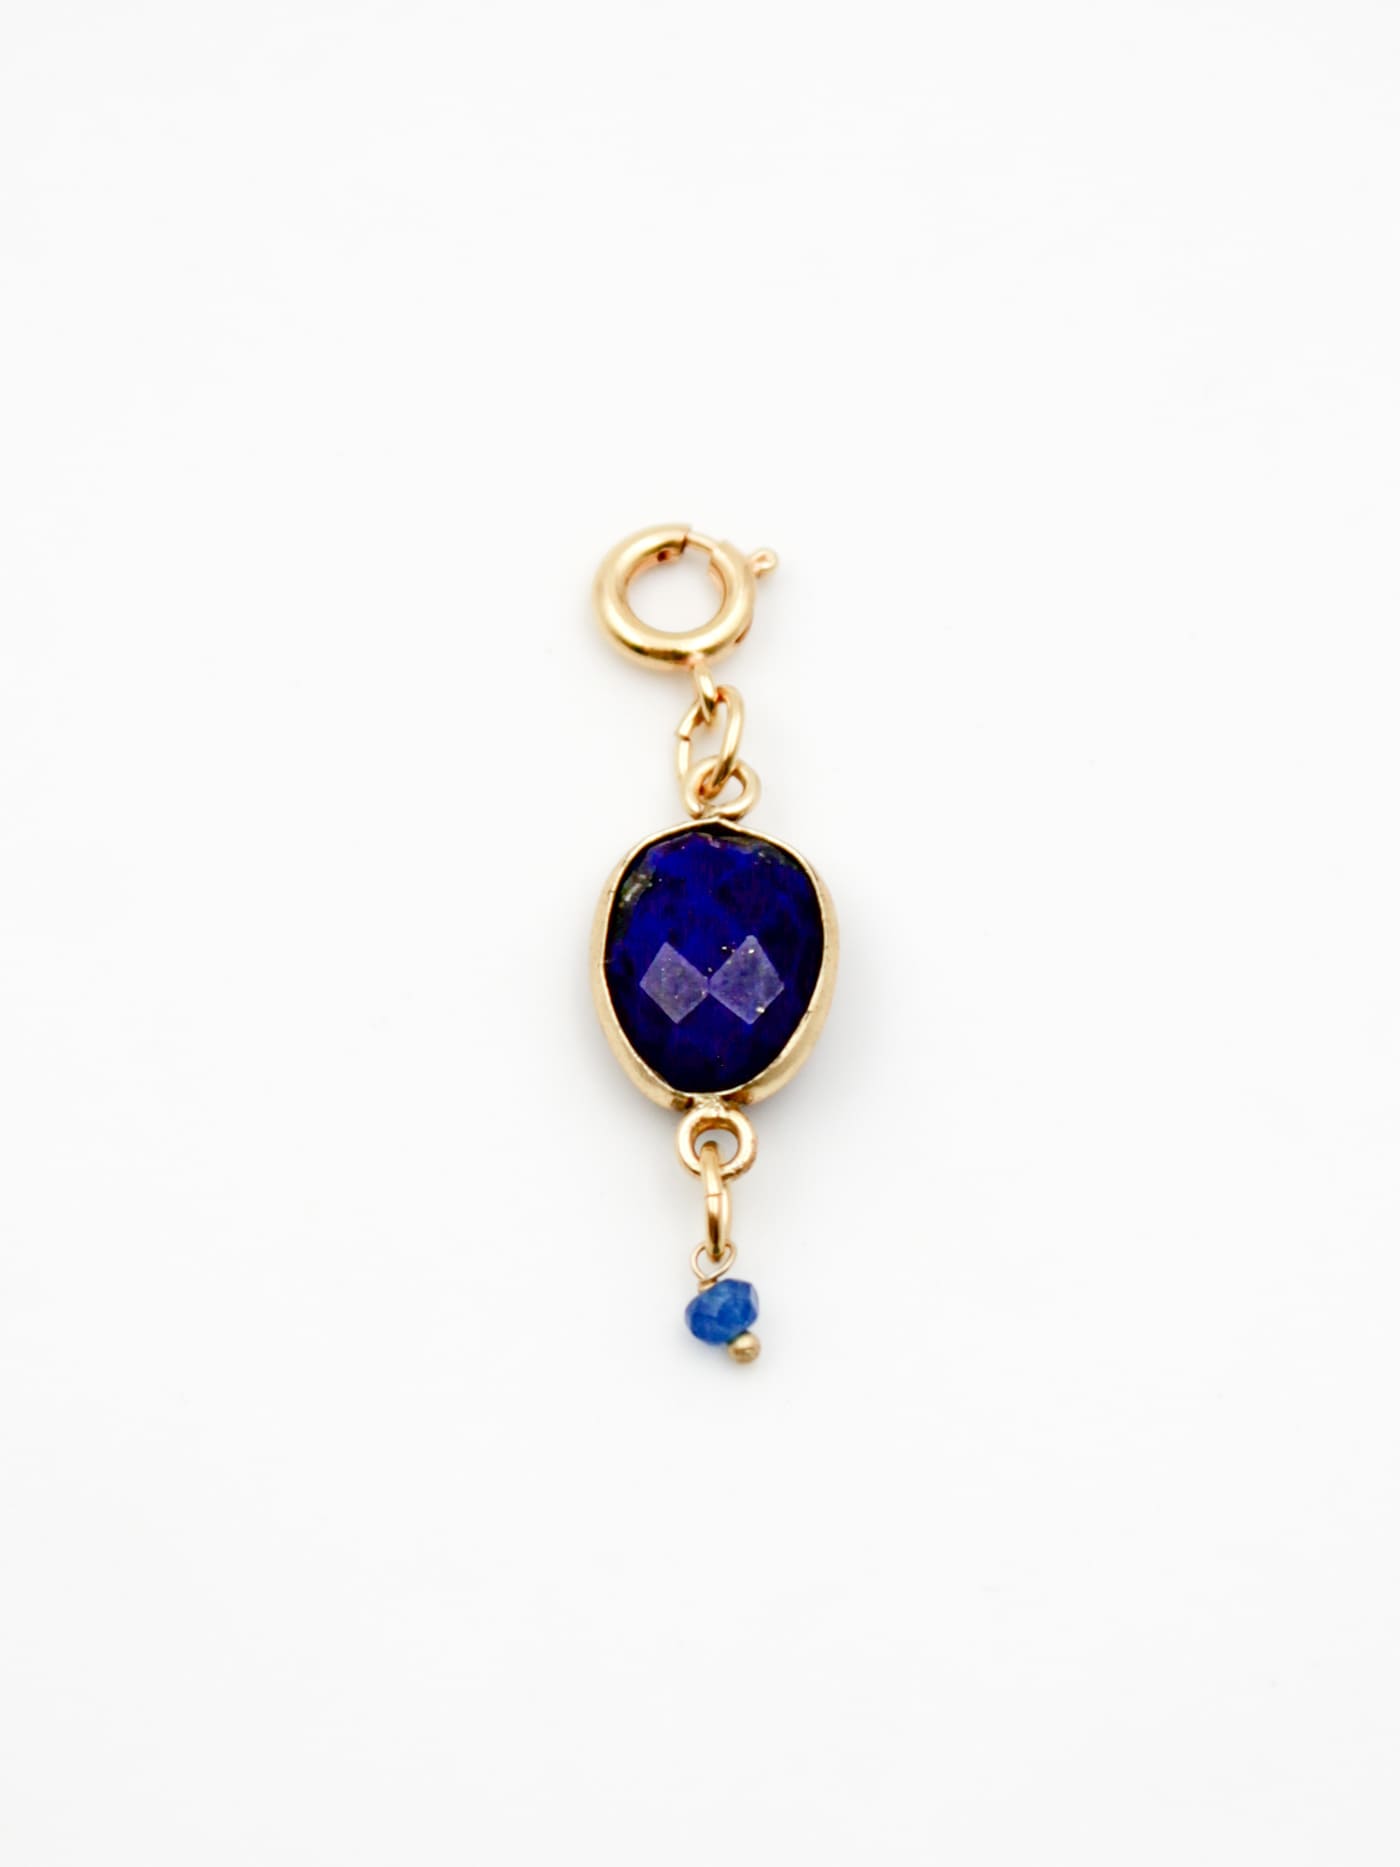 Bijoux dorés - Charm pierre en lapis-lazuli - Gamme GRIGRI - L'Atelier des Dames 